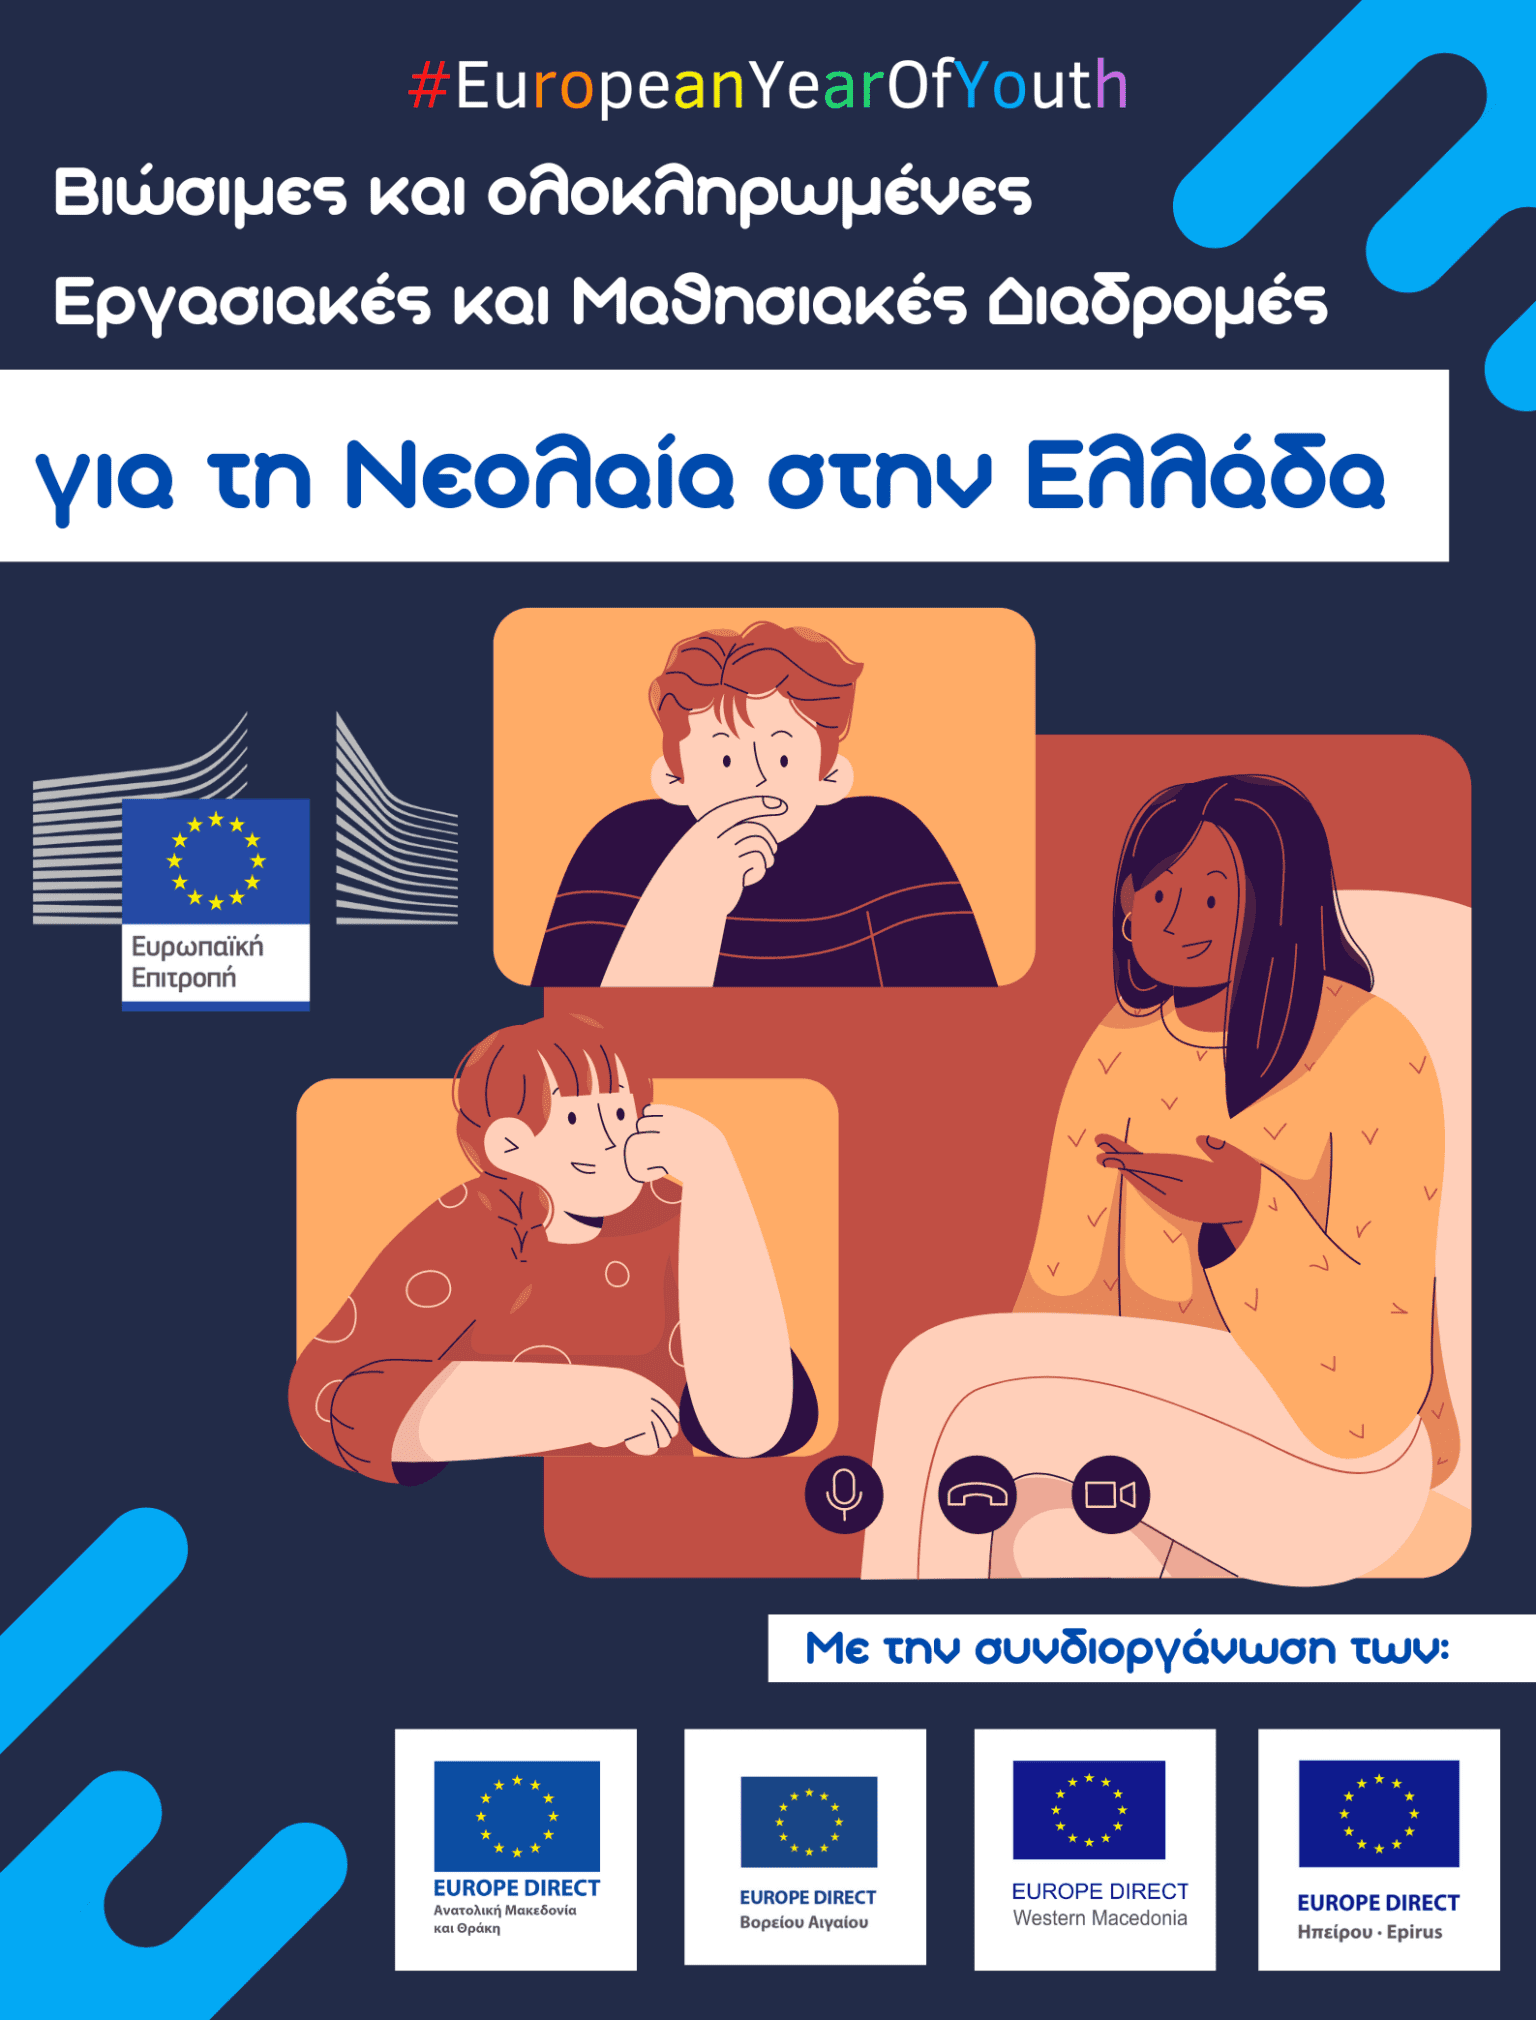 Το Europe Direct Δυτικής Μακεδονίας συμμετέχει στη συζήτηση για τις "Βιώσιμες και ολοκληρωμένες εργασιακές και μαθησιακές διαδρομές για τη νεολαία στην Ελλάδα"